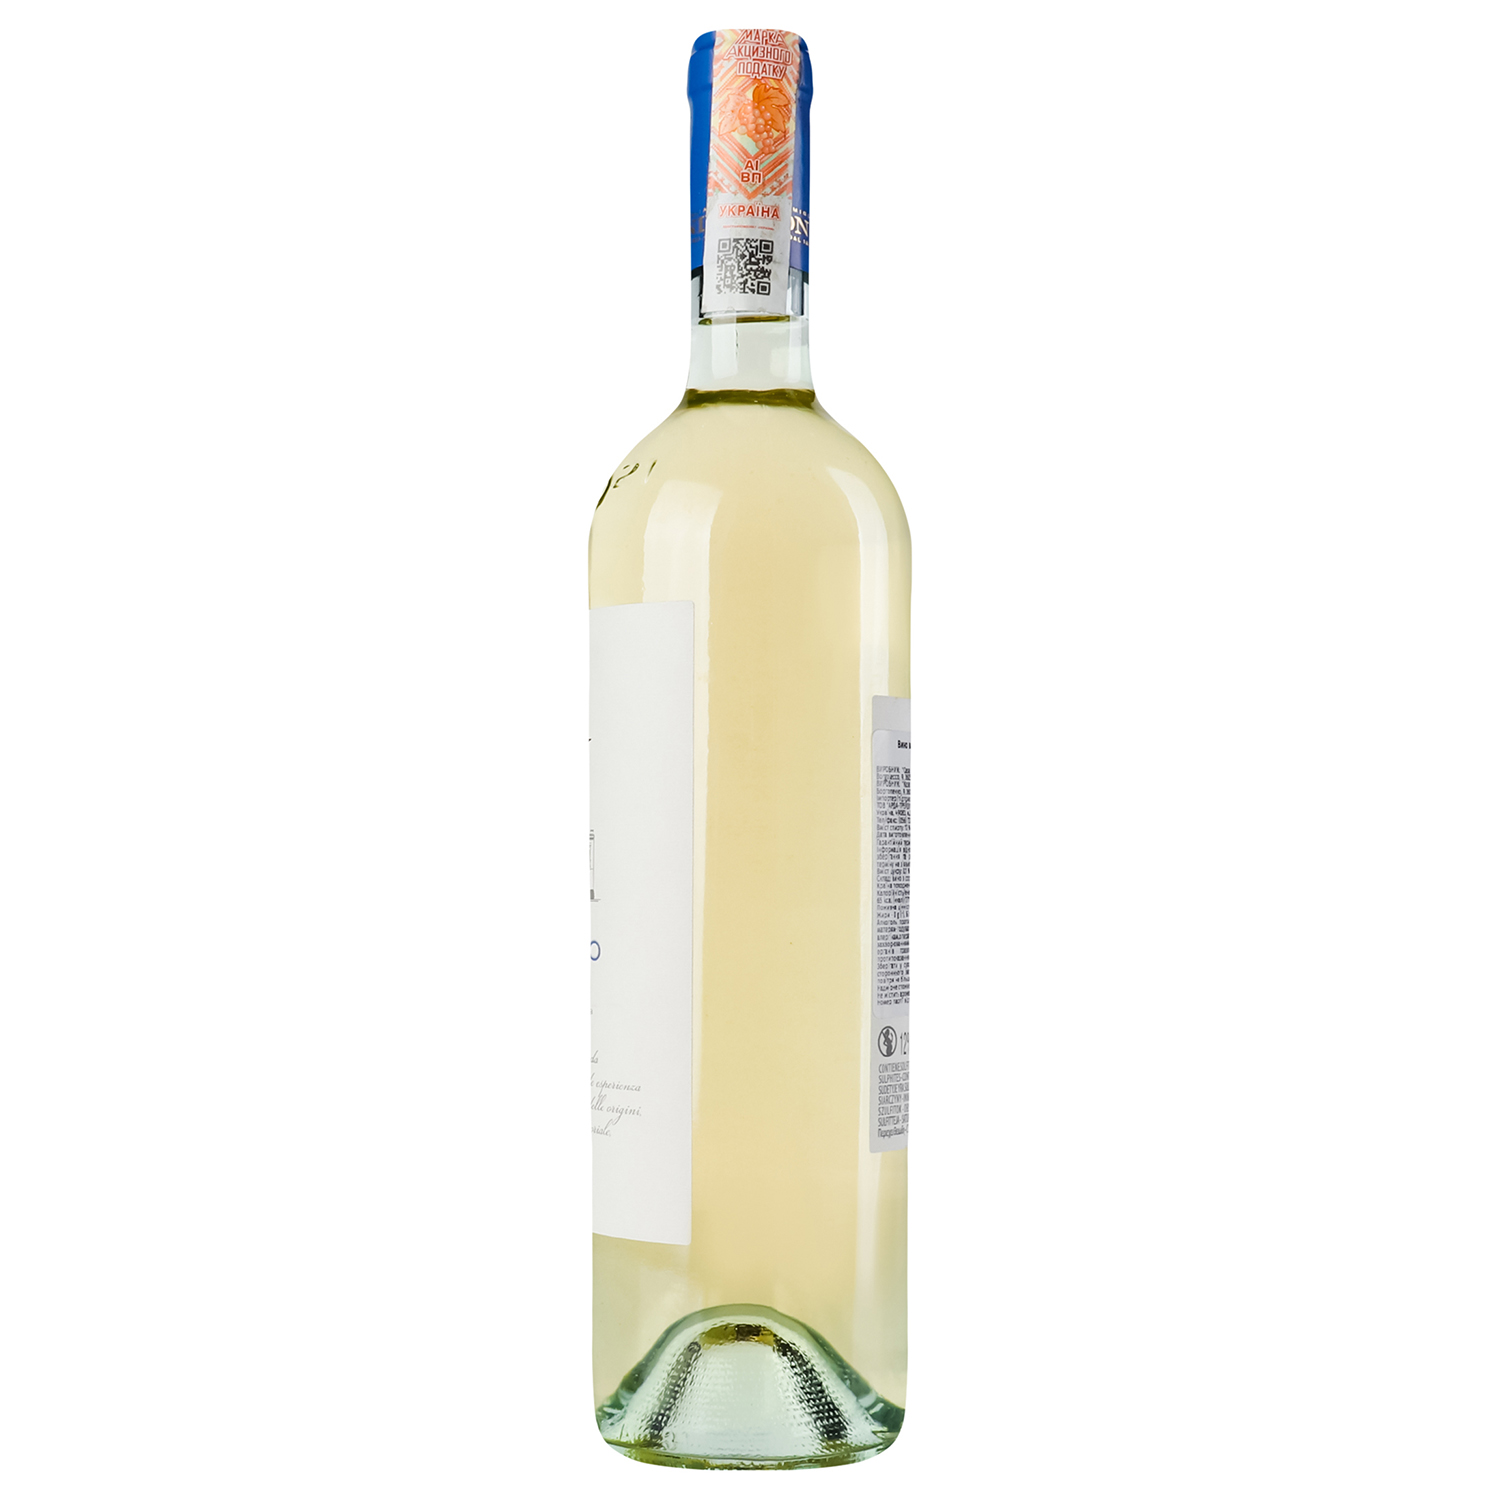 Вино Zonin Pinot Grigio IGP, біле, сухе, 13%, 0,75 л (37170) - фото 2